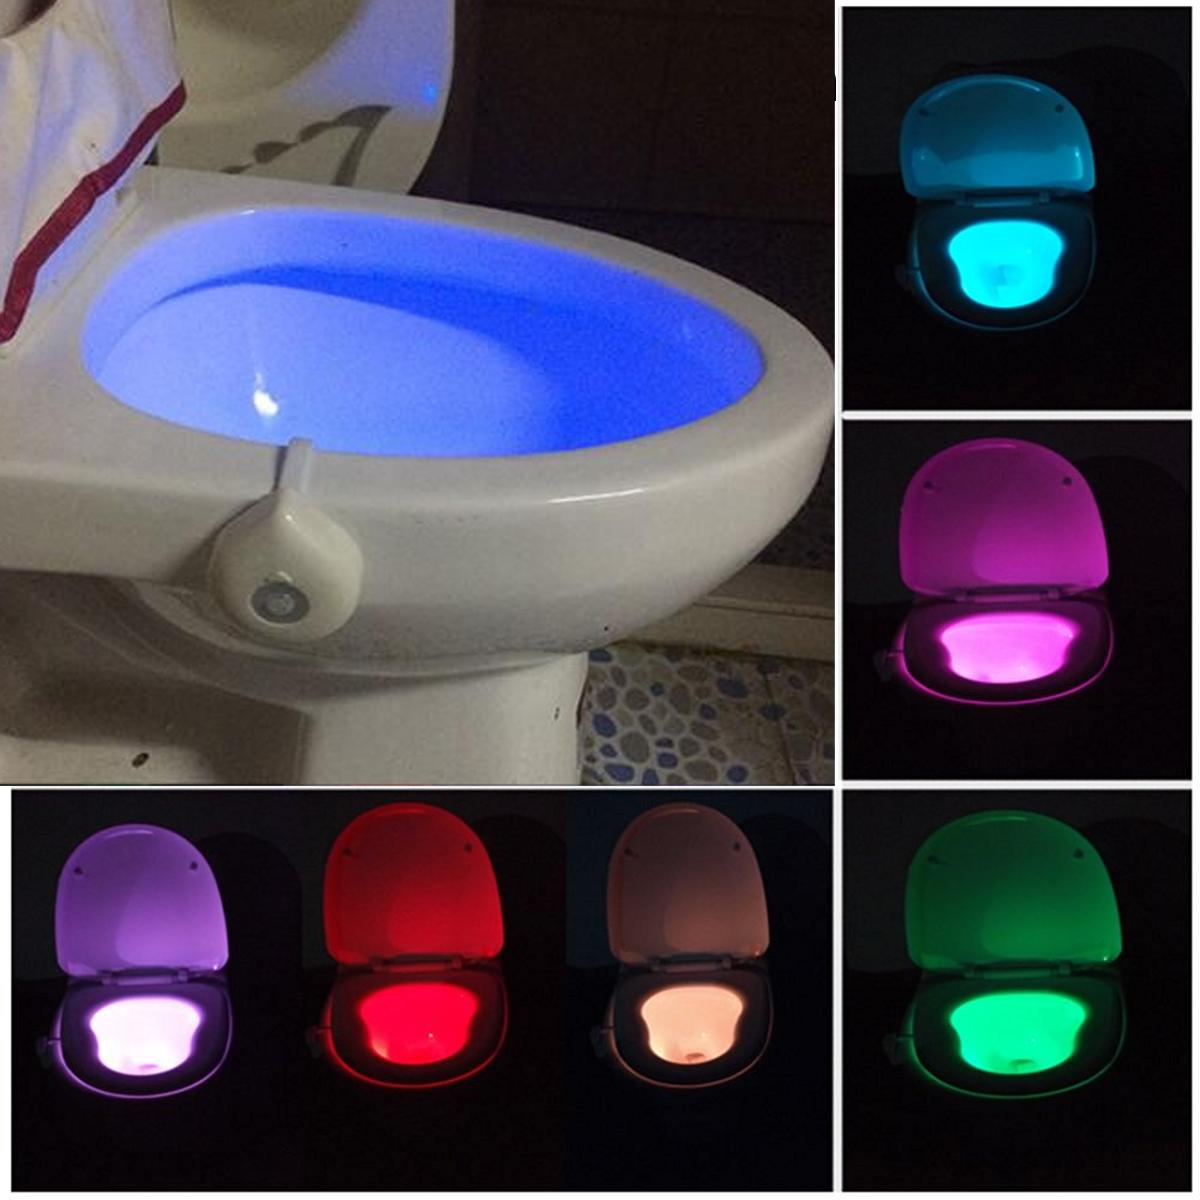 Motion Activated Toilet Night Light, Motion Sensor Light Bulb For Bathroom